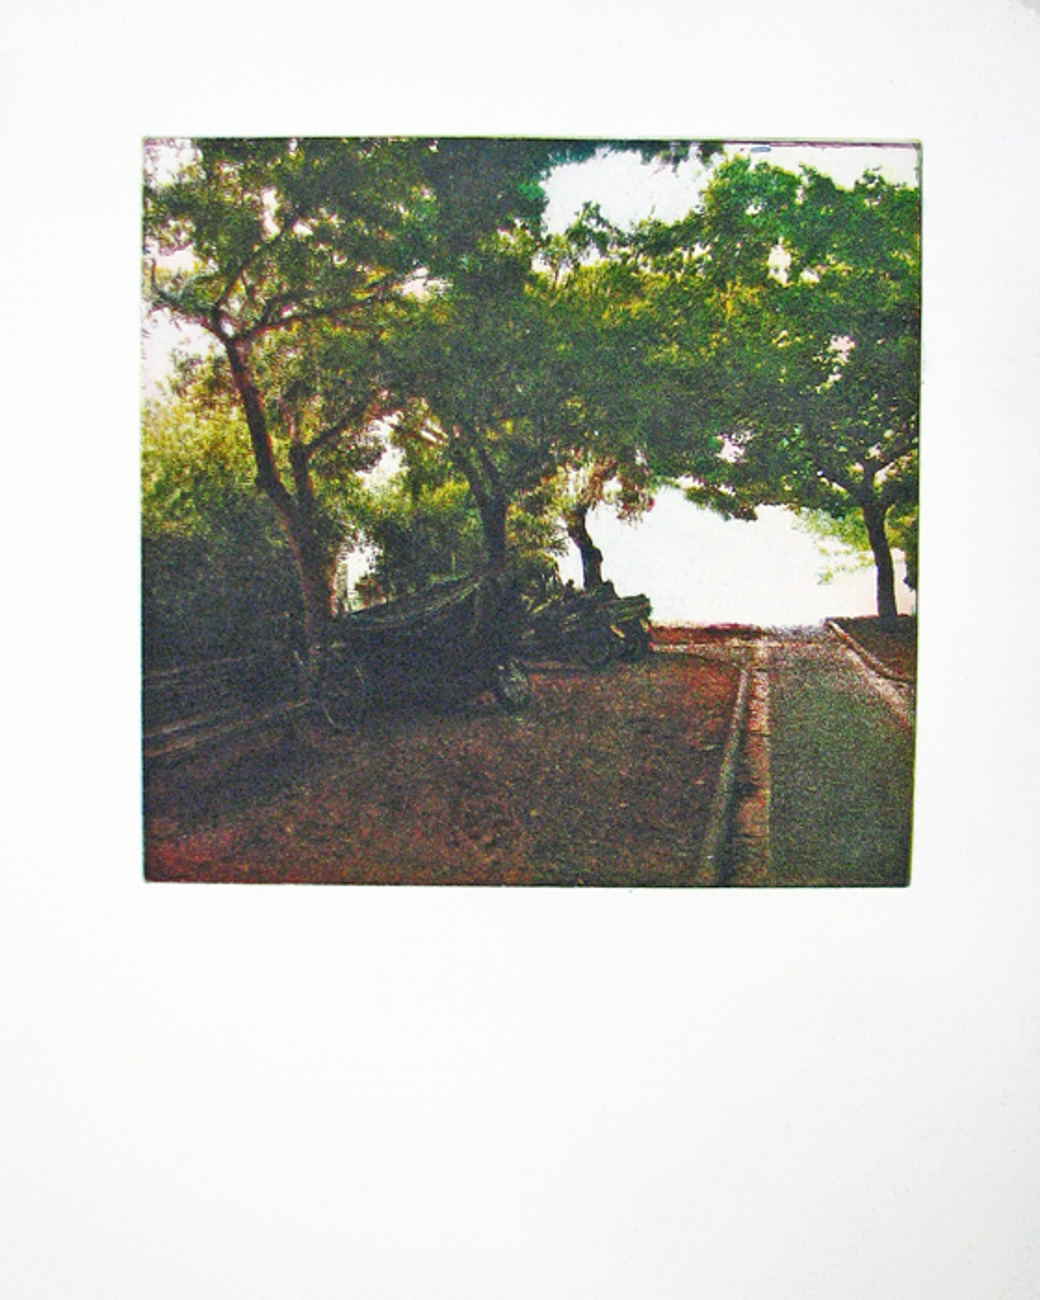 אלי דינר / סימטה מרחוב חיסין, הדפס, 2009